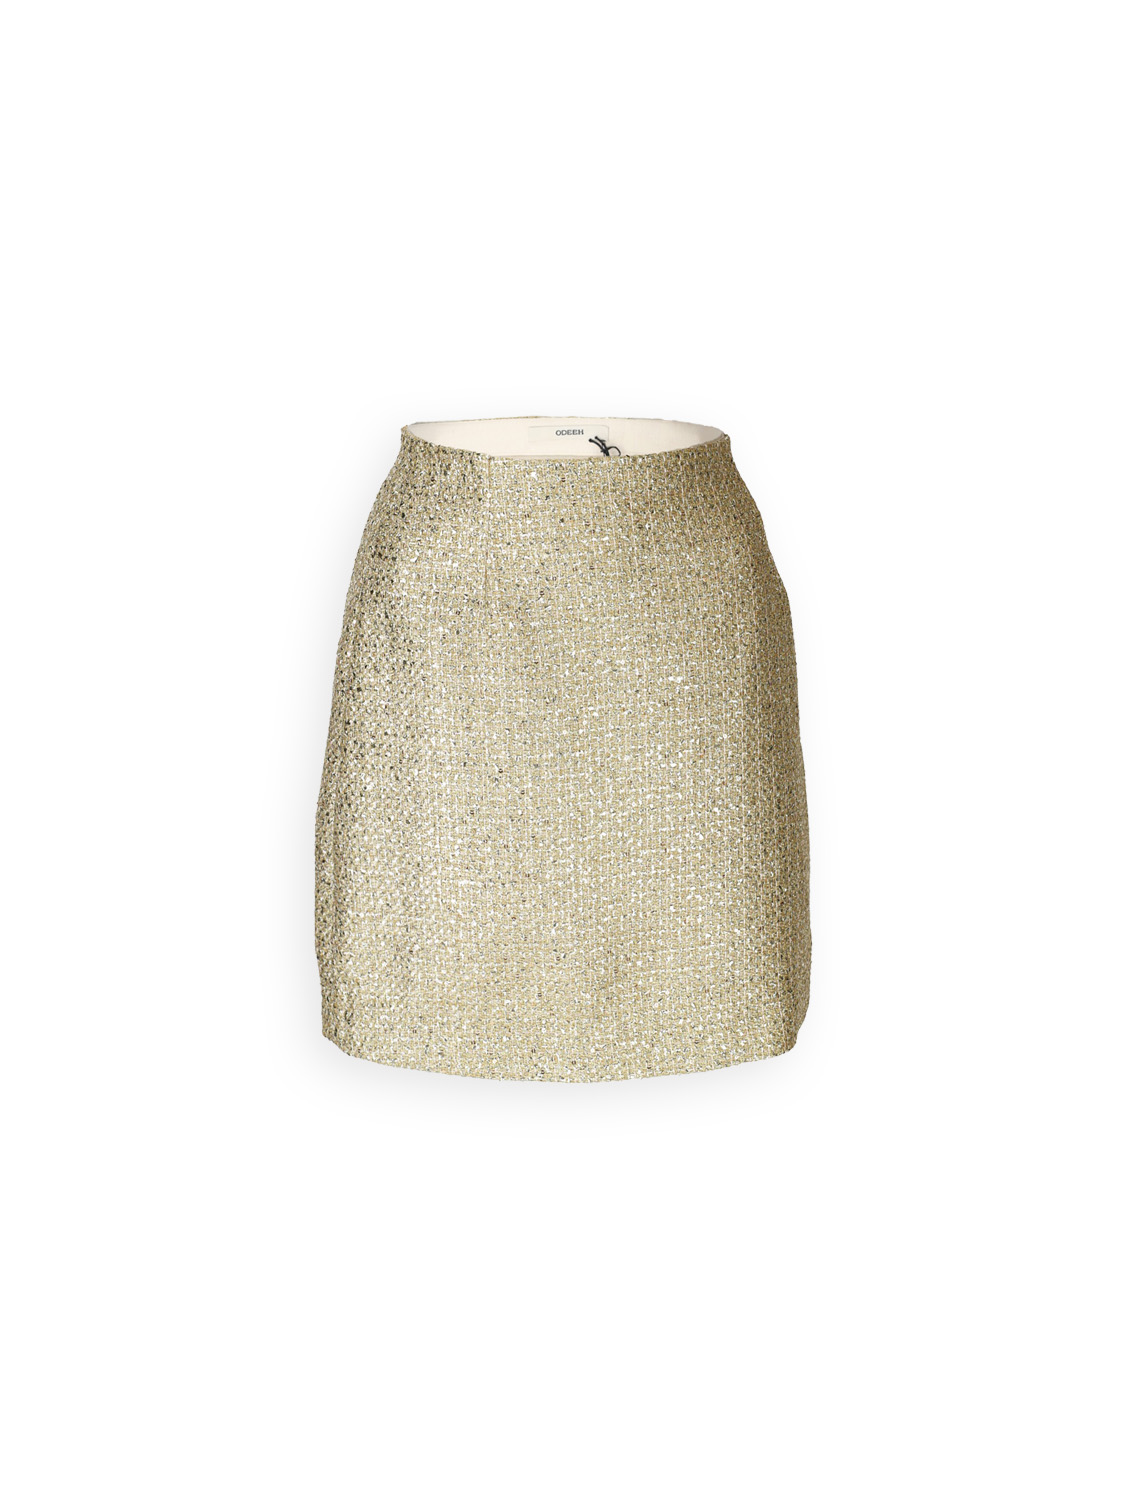 Odeeh Gold Brocade - Brocade mini skirt with lurex details  gold 34